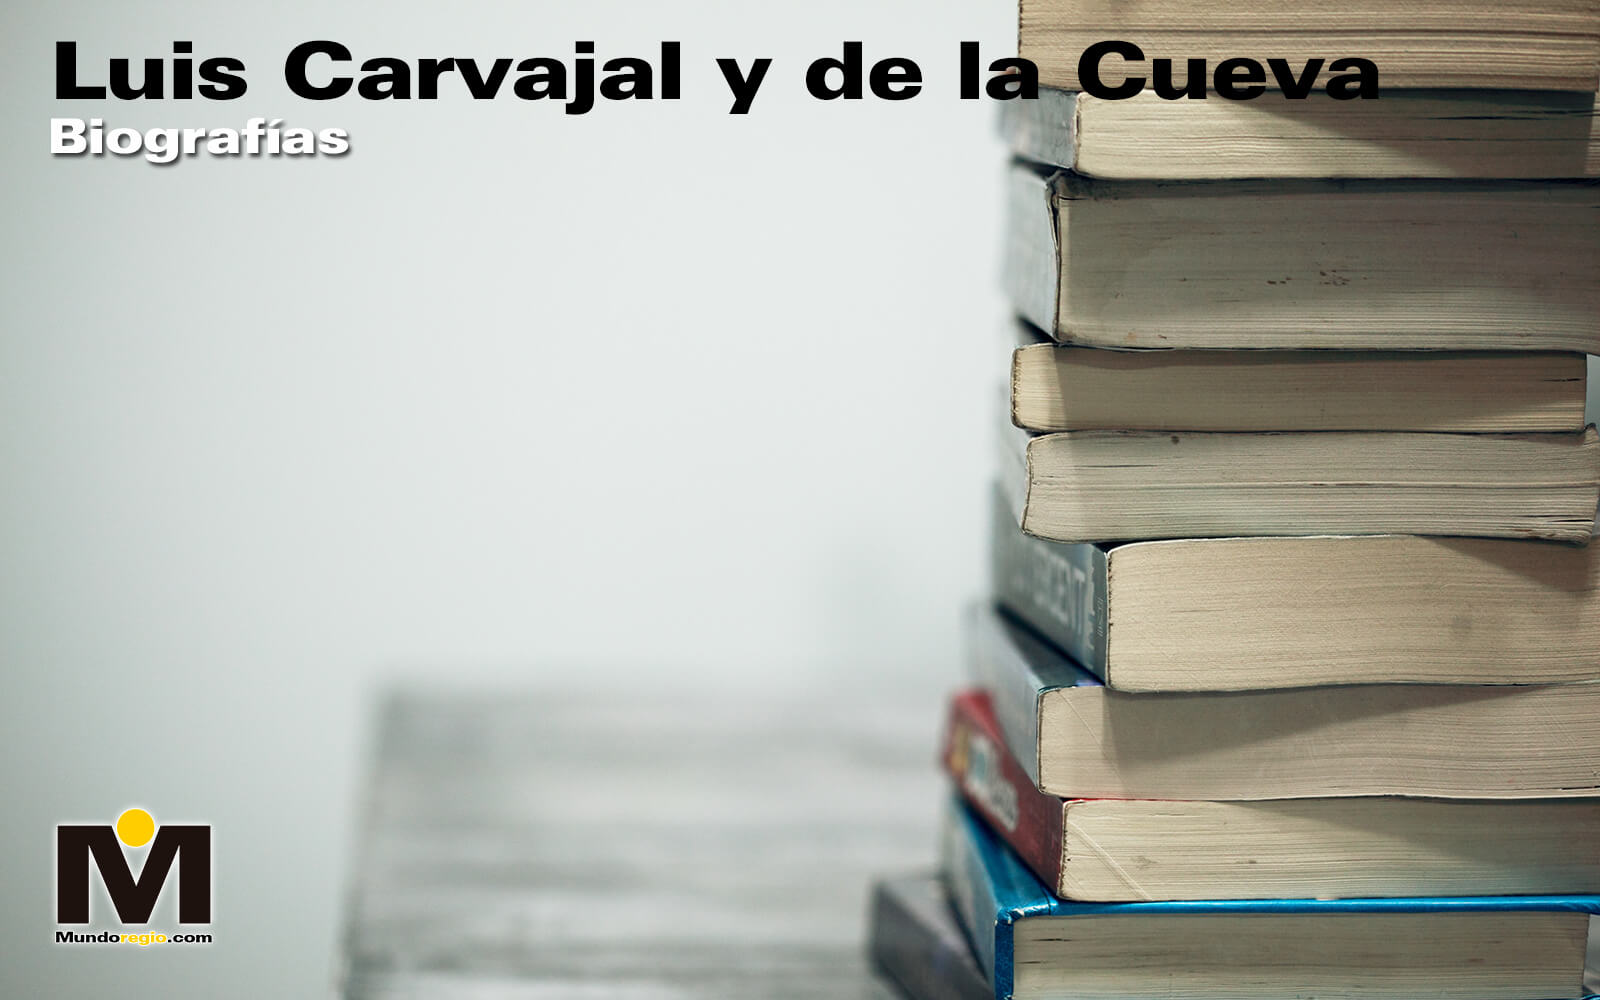 Luis Carvajal y de la Cueva